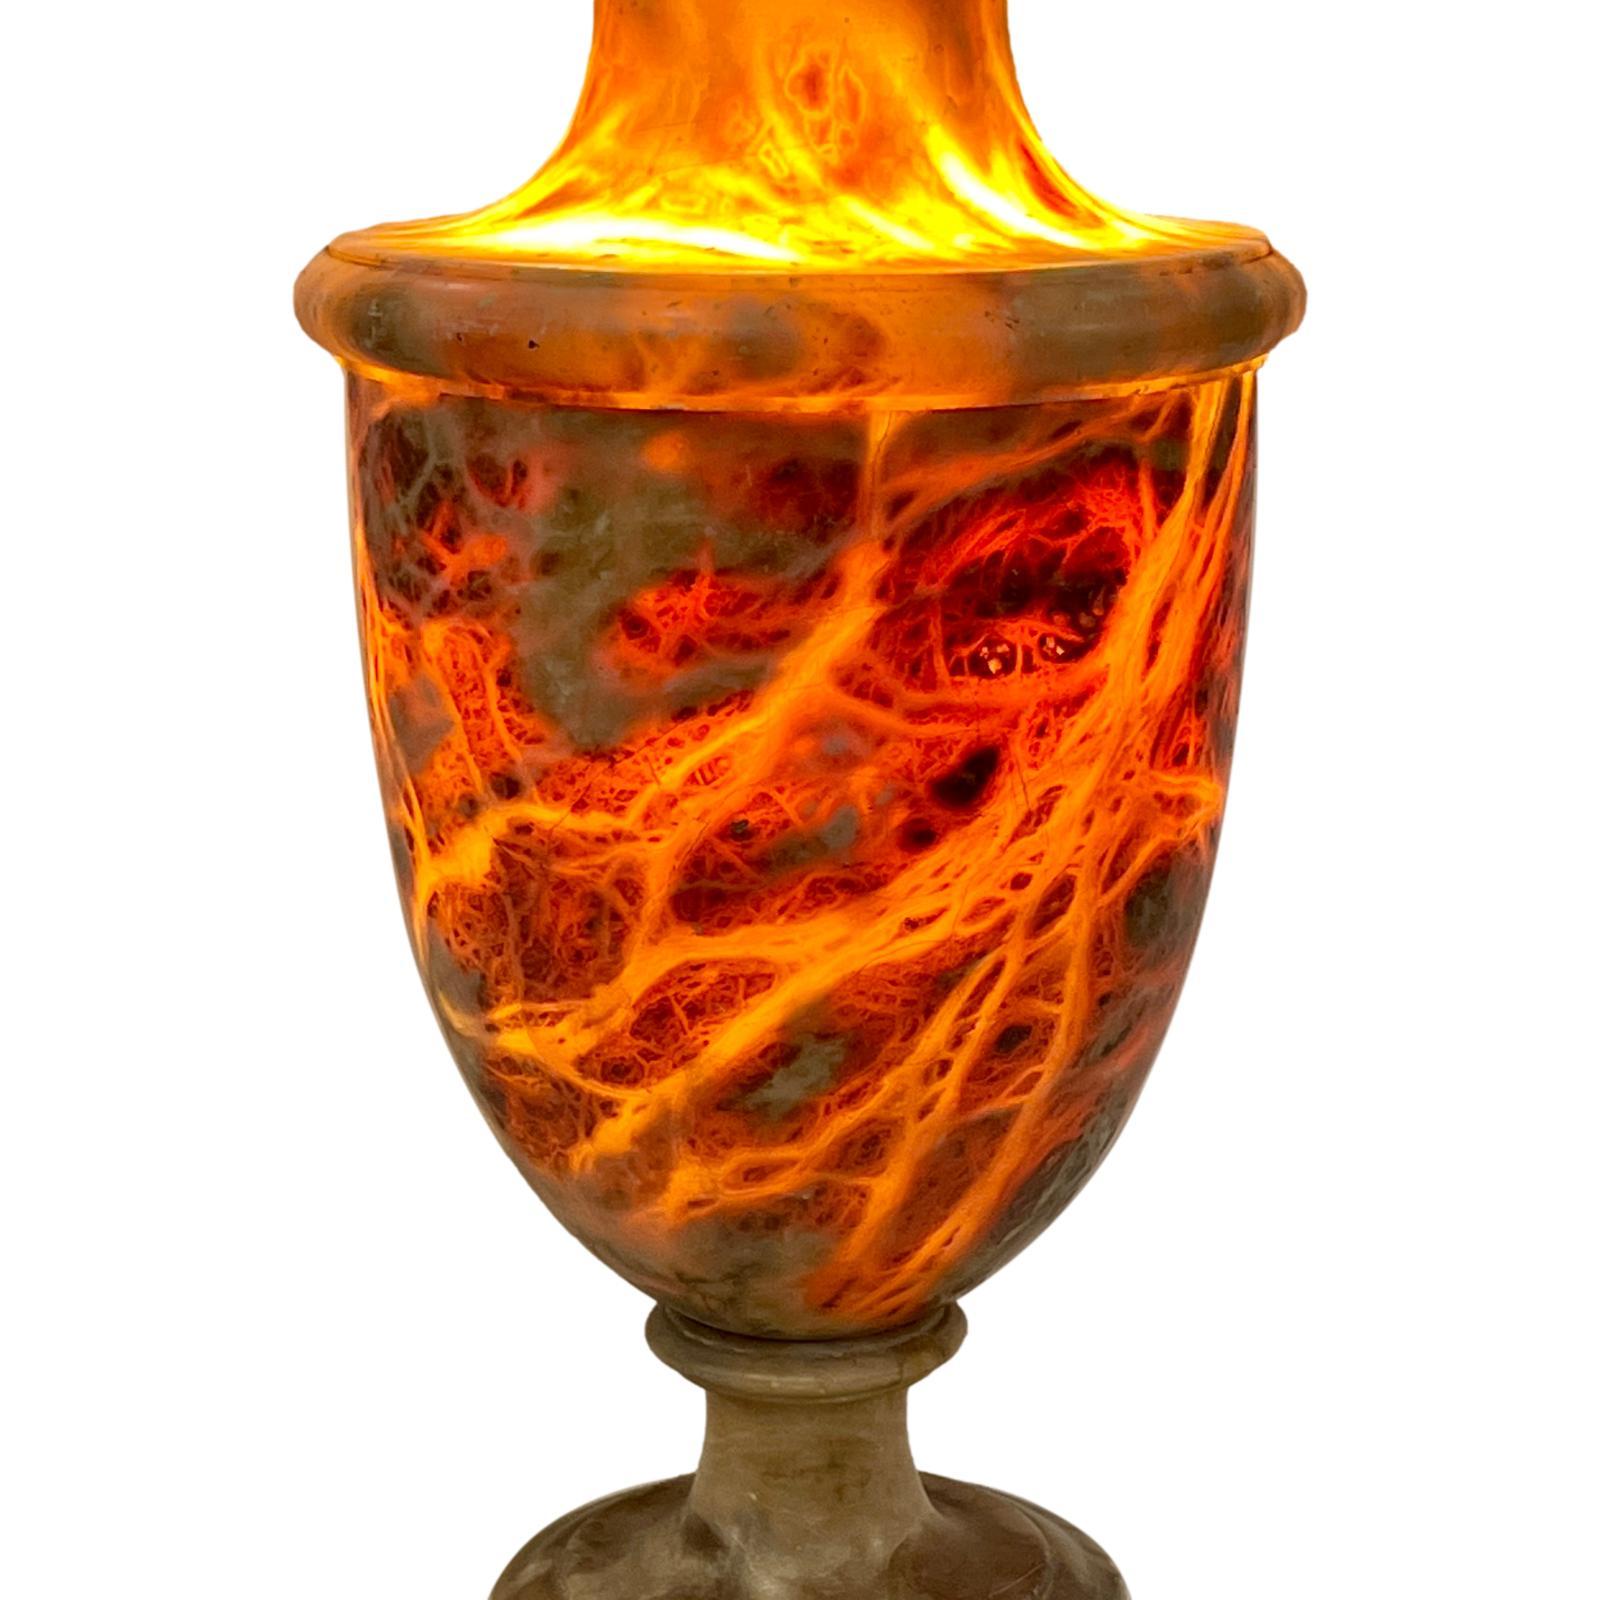 Lampe italienne en forme d'urne en albâtre, datant des années 1920, montée sur une base en lucite.

Mesures :
Hauteur : 13.5